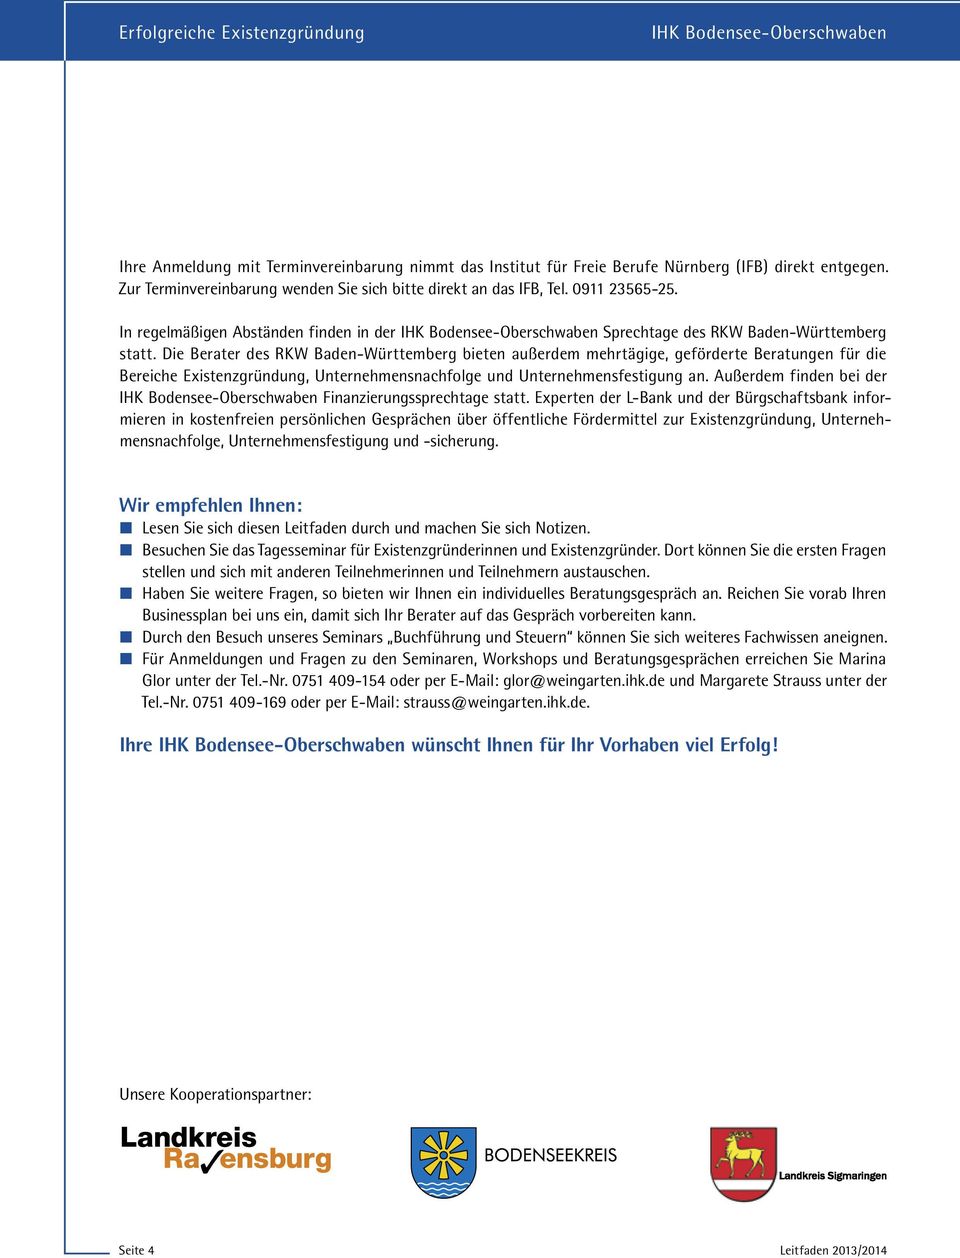 Die Berater des RKW Baden-Württemberg bieten außerdem mehrtägige, geförderte Beratungen für die Bereiche Existenzgründung, Unternehmensnachfolge und Unternehmensfestigung an.